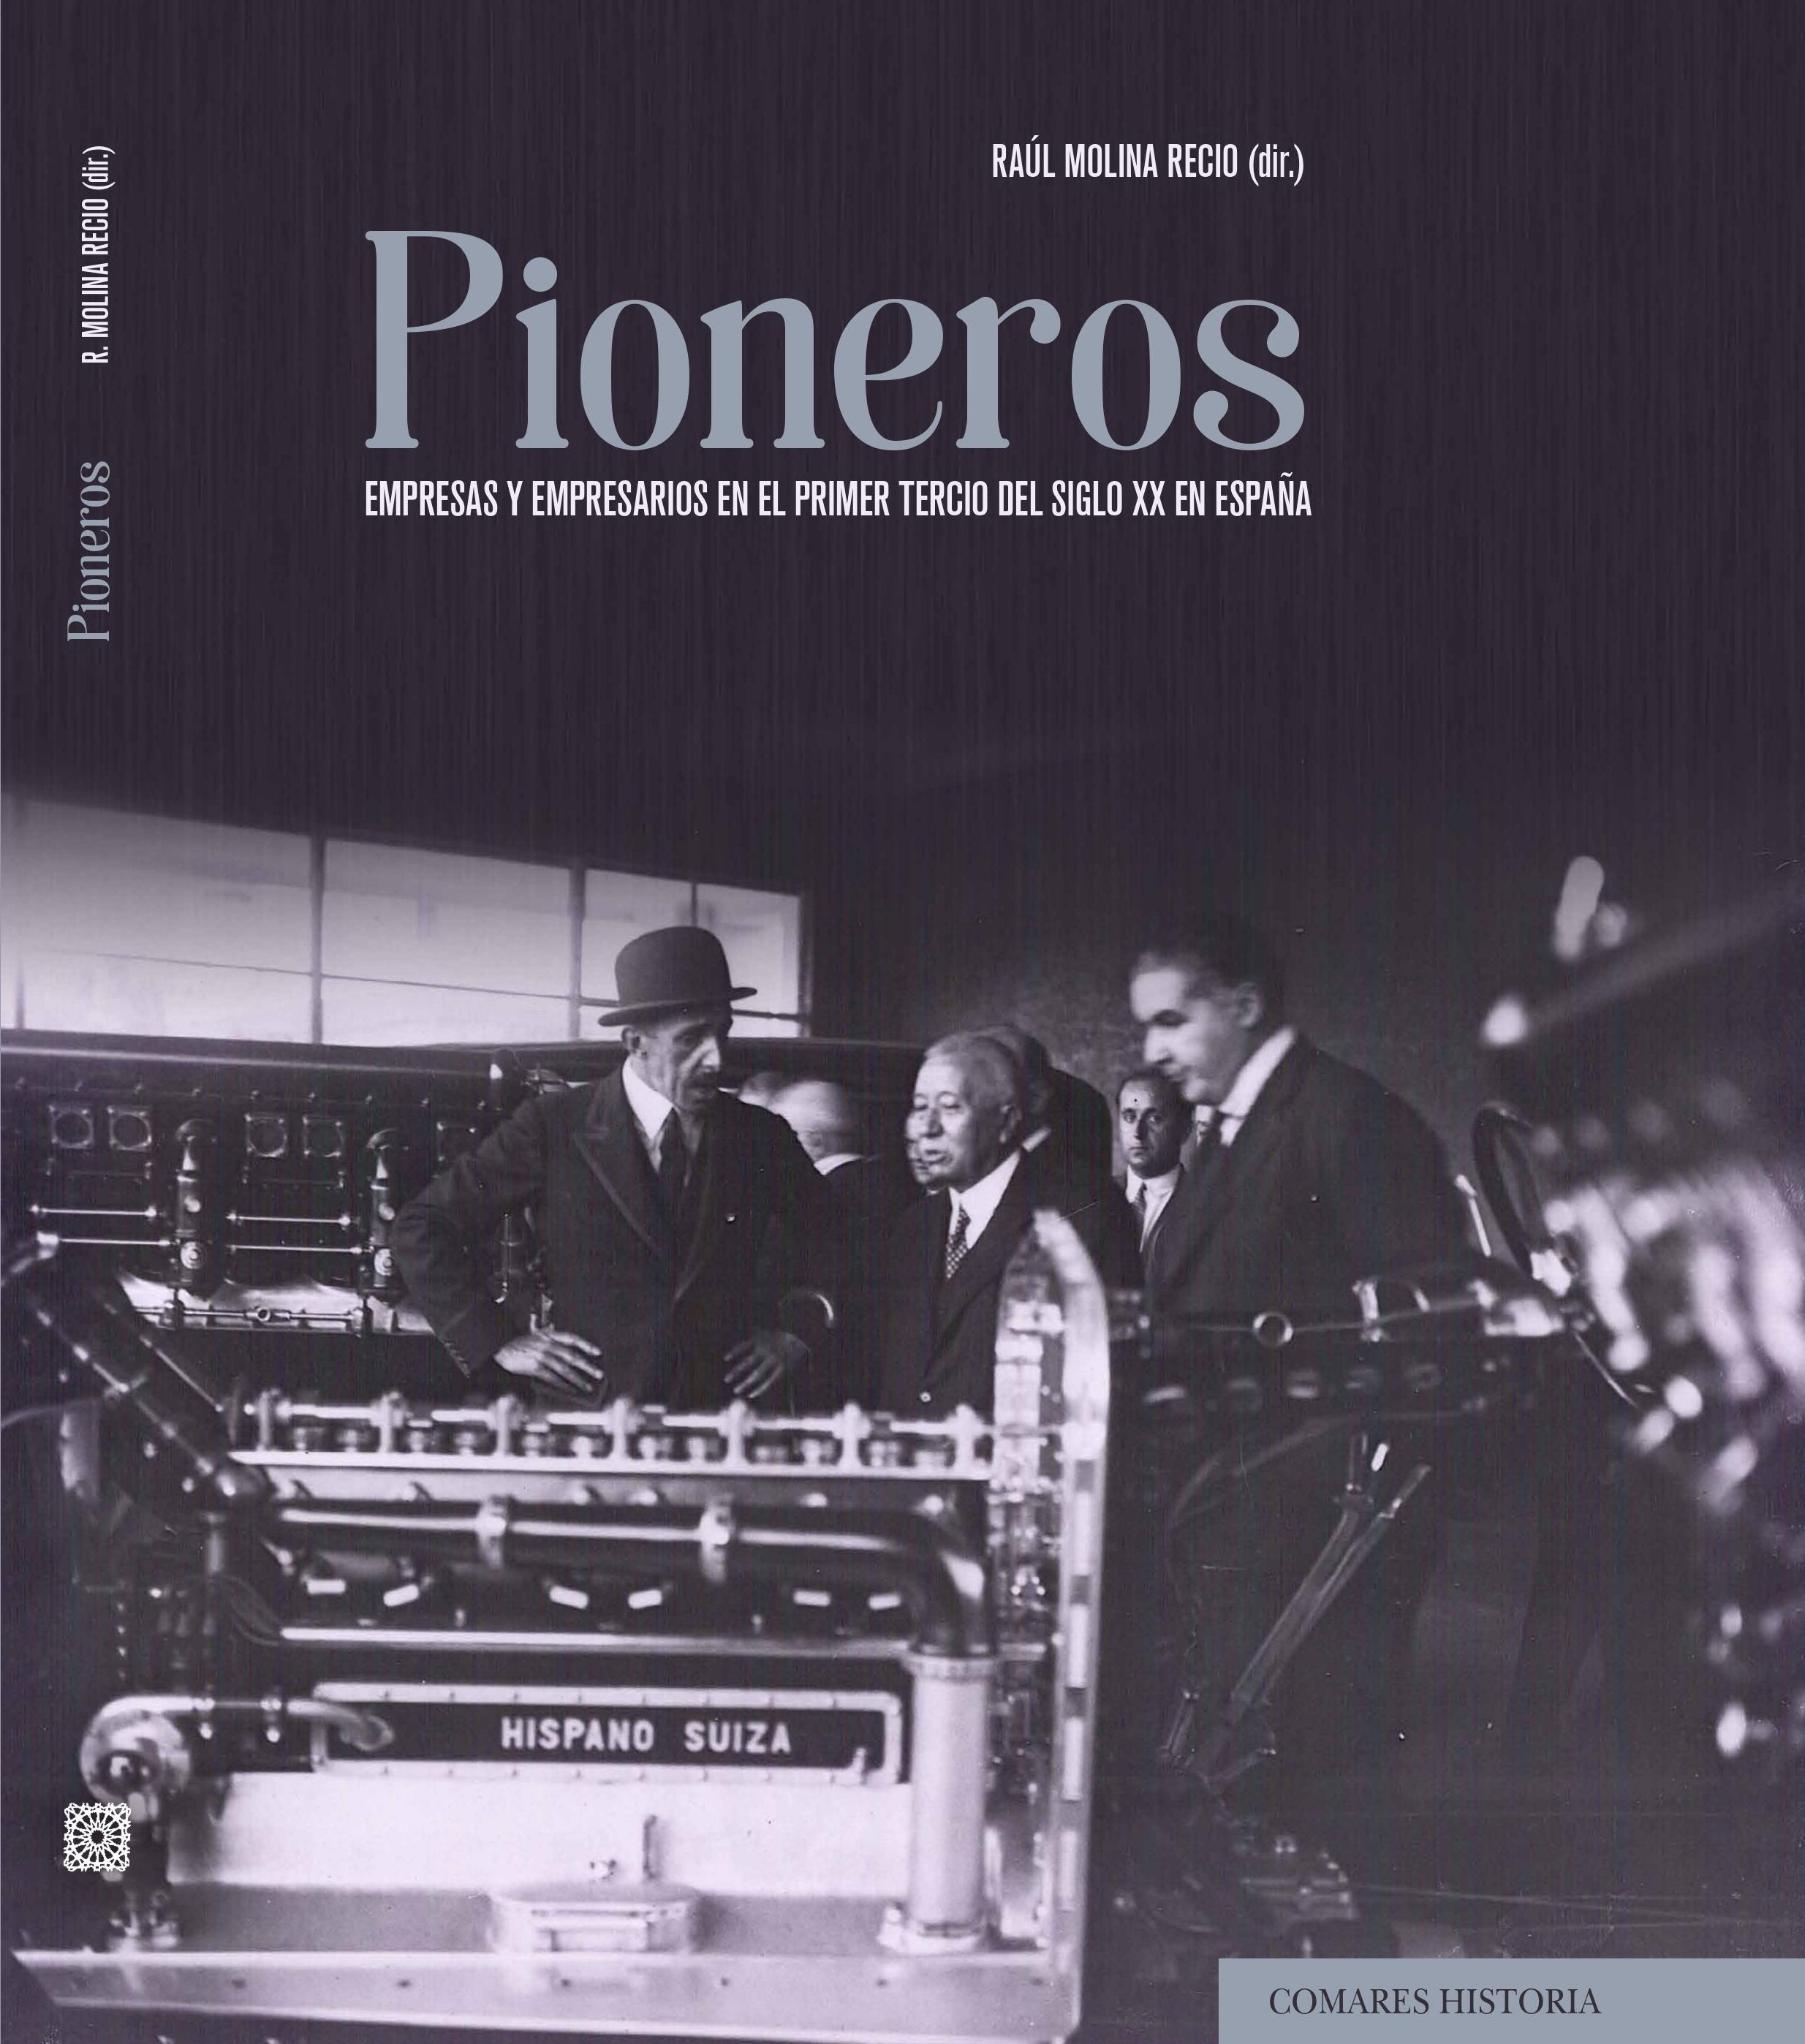 Imagen de portada del libro Pioneros